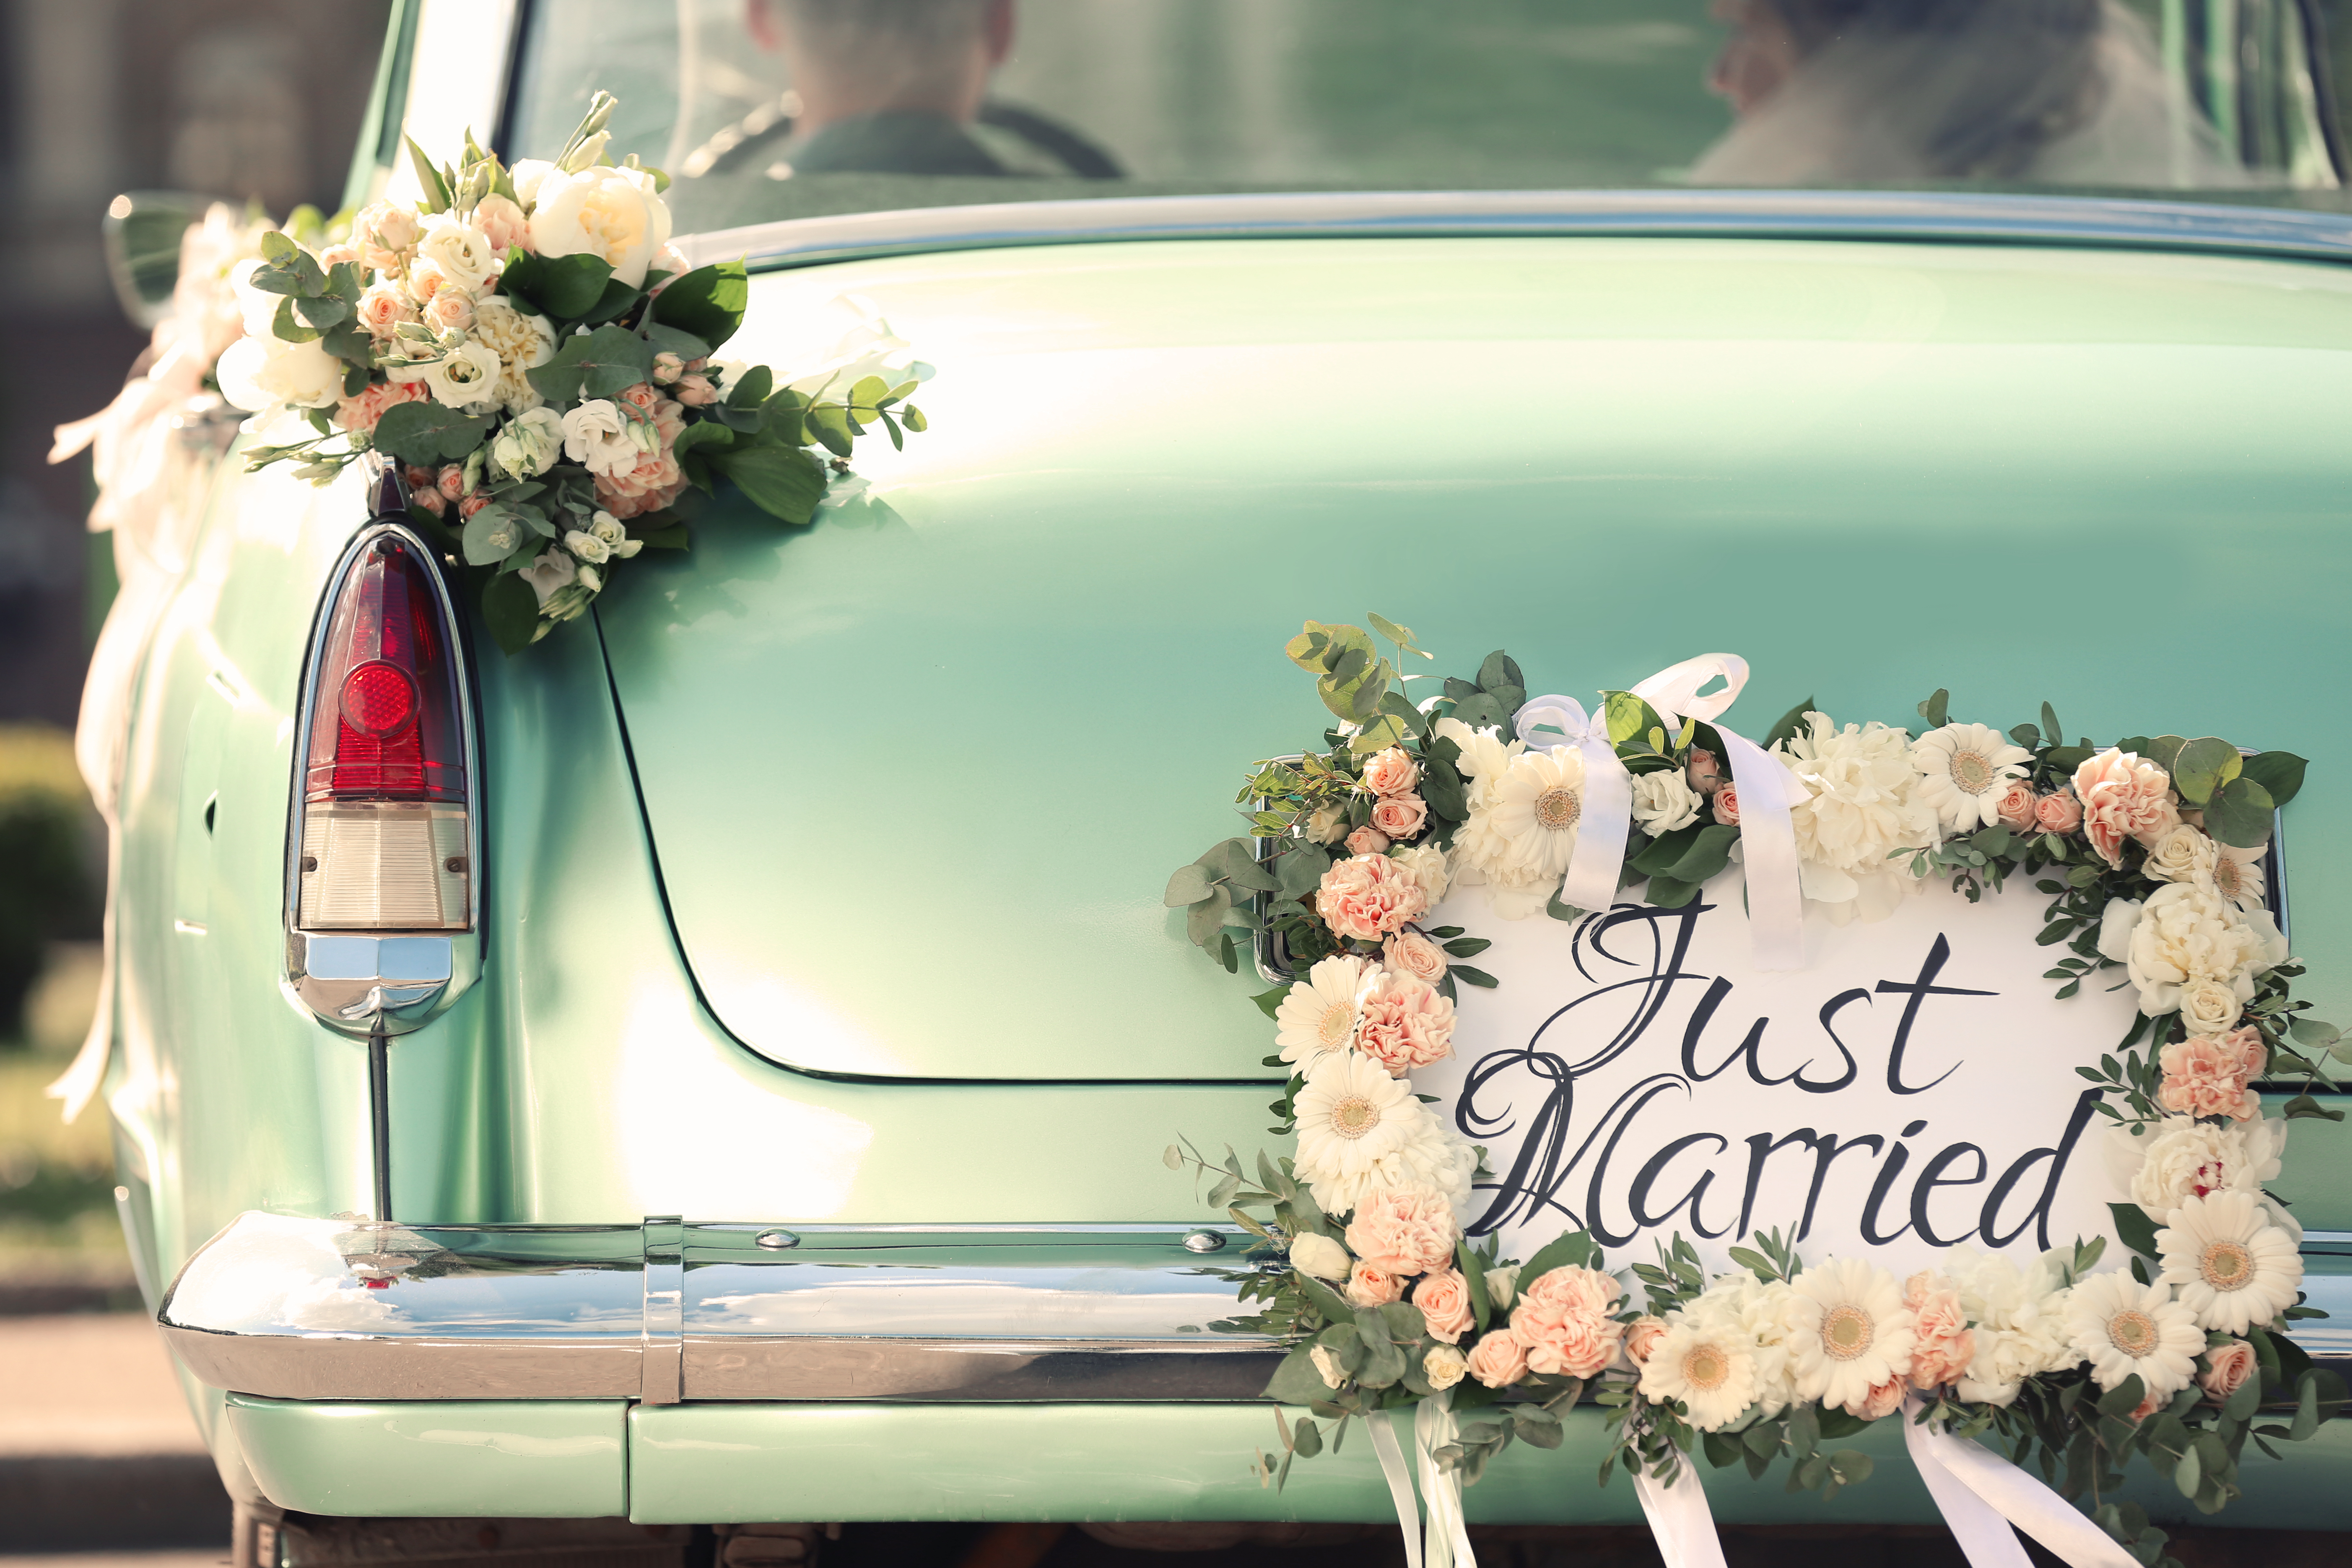 Une voiture avec une plaque "Jeunes mariés" et un décor floral. | Source : Shutterstock